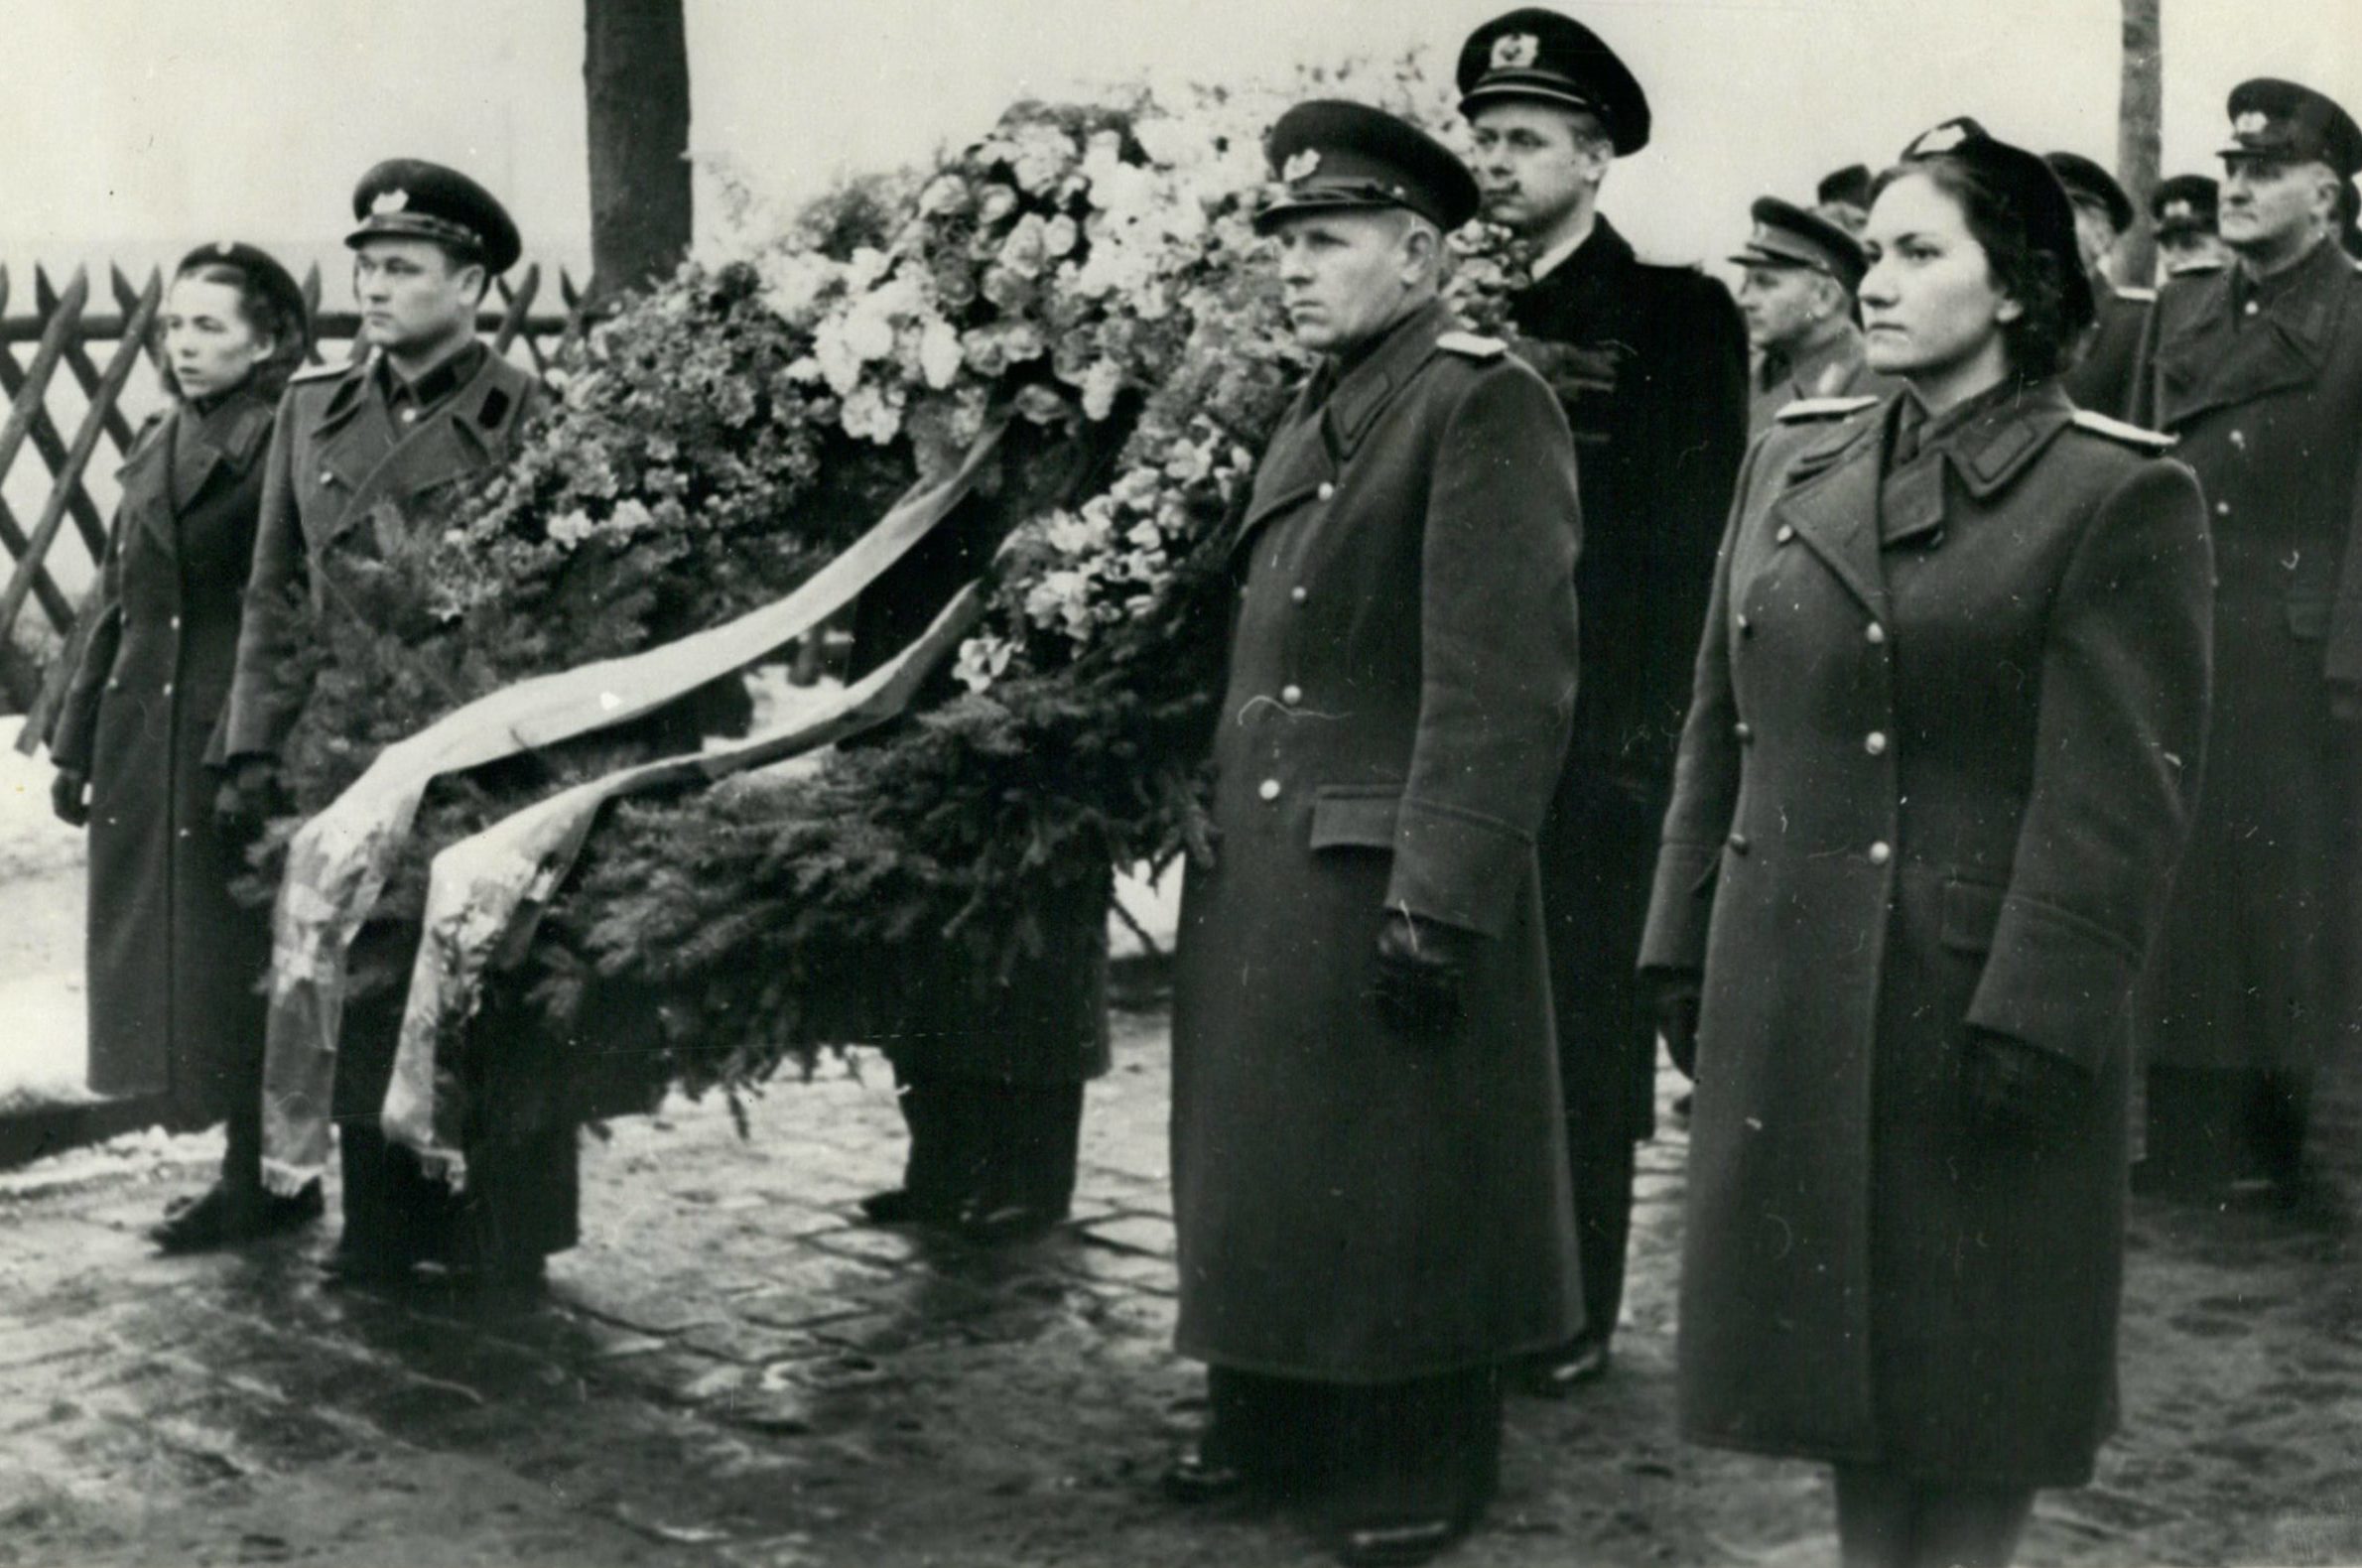 Ehrung von ermordeten Kommunisten in Ost-Berlin, 1953. Foto: Imago/Zuma/Keystone